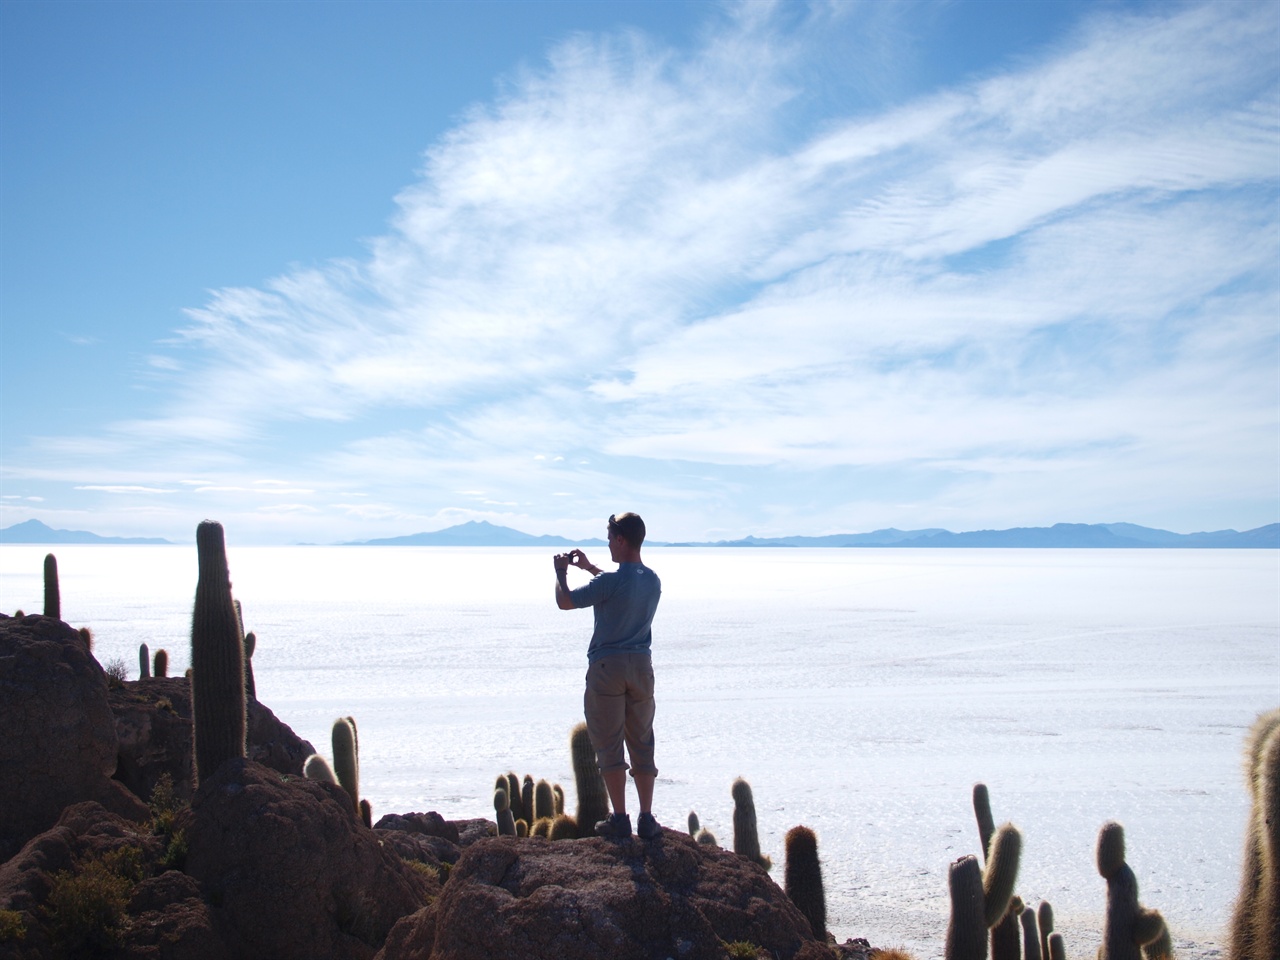 우유니 소금사막 안의 물고기 섬에서 여행자가 사진을 찍고 있다.